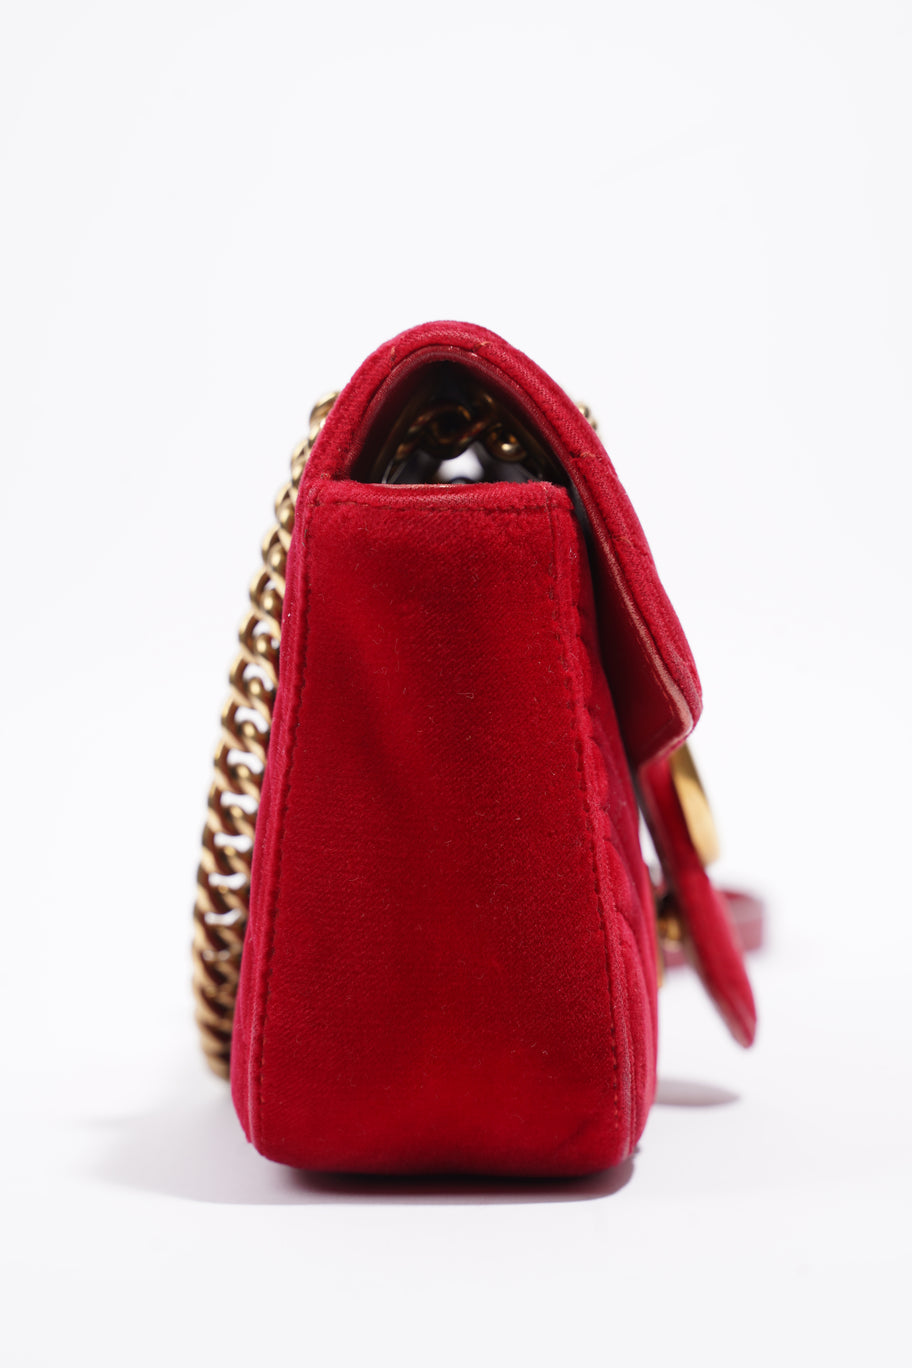 GG Marmont Bag Red Velvet Mini Image 5